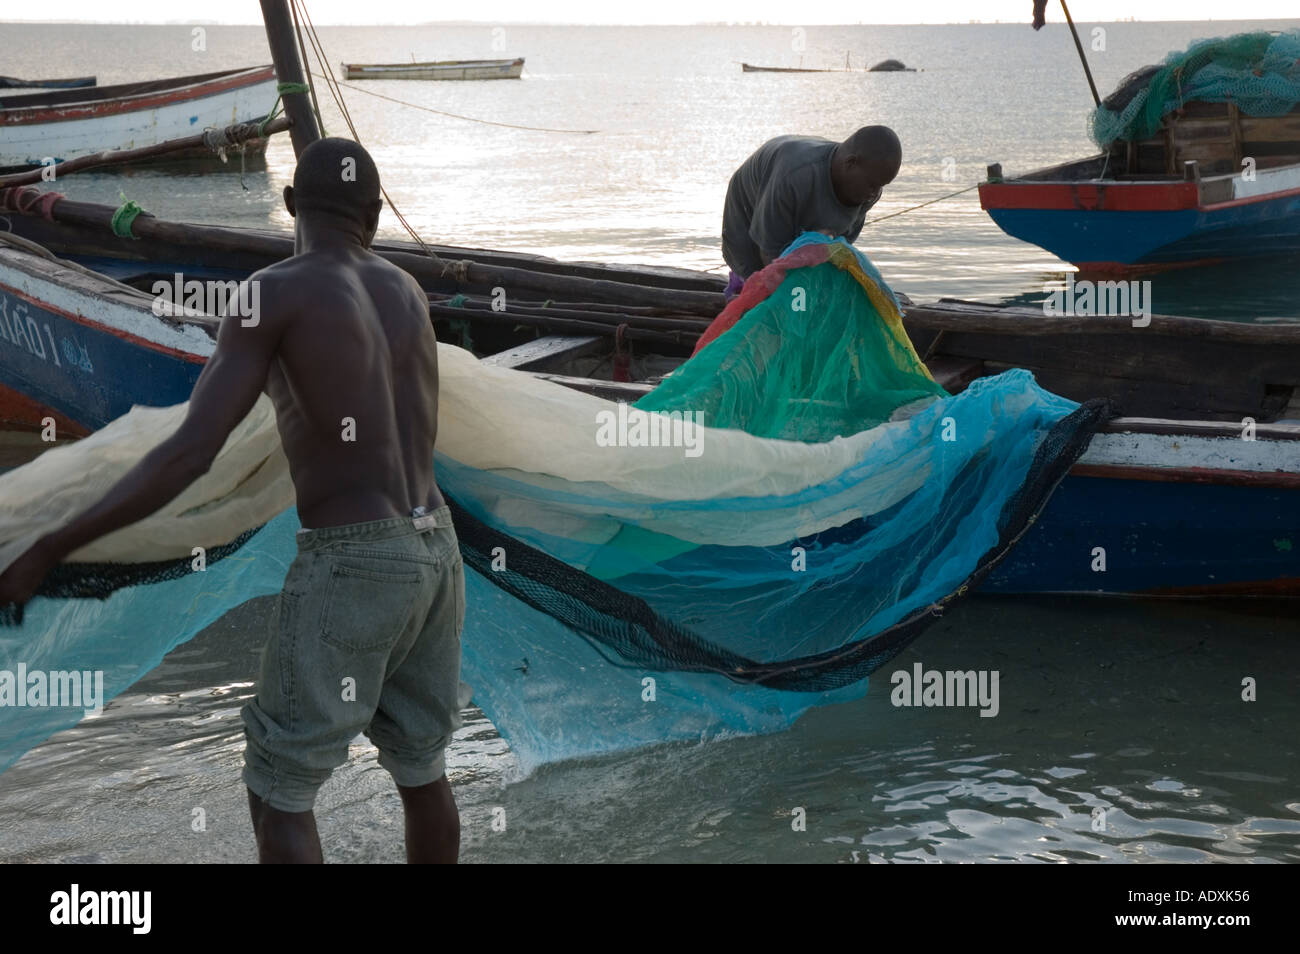 Les pêcheurs Mozambique le déchargement de leur filet de pêche pour vérifier et réparer avant de partir sur l'océan Indien dans leur embarcation typique pour Banque D'Images